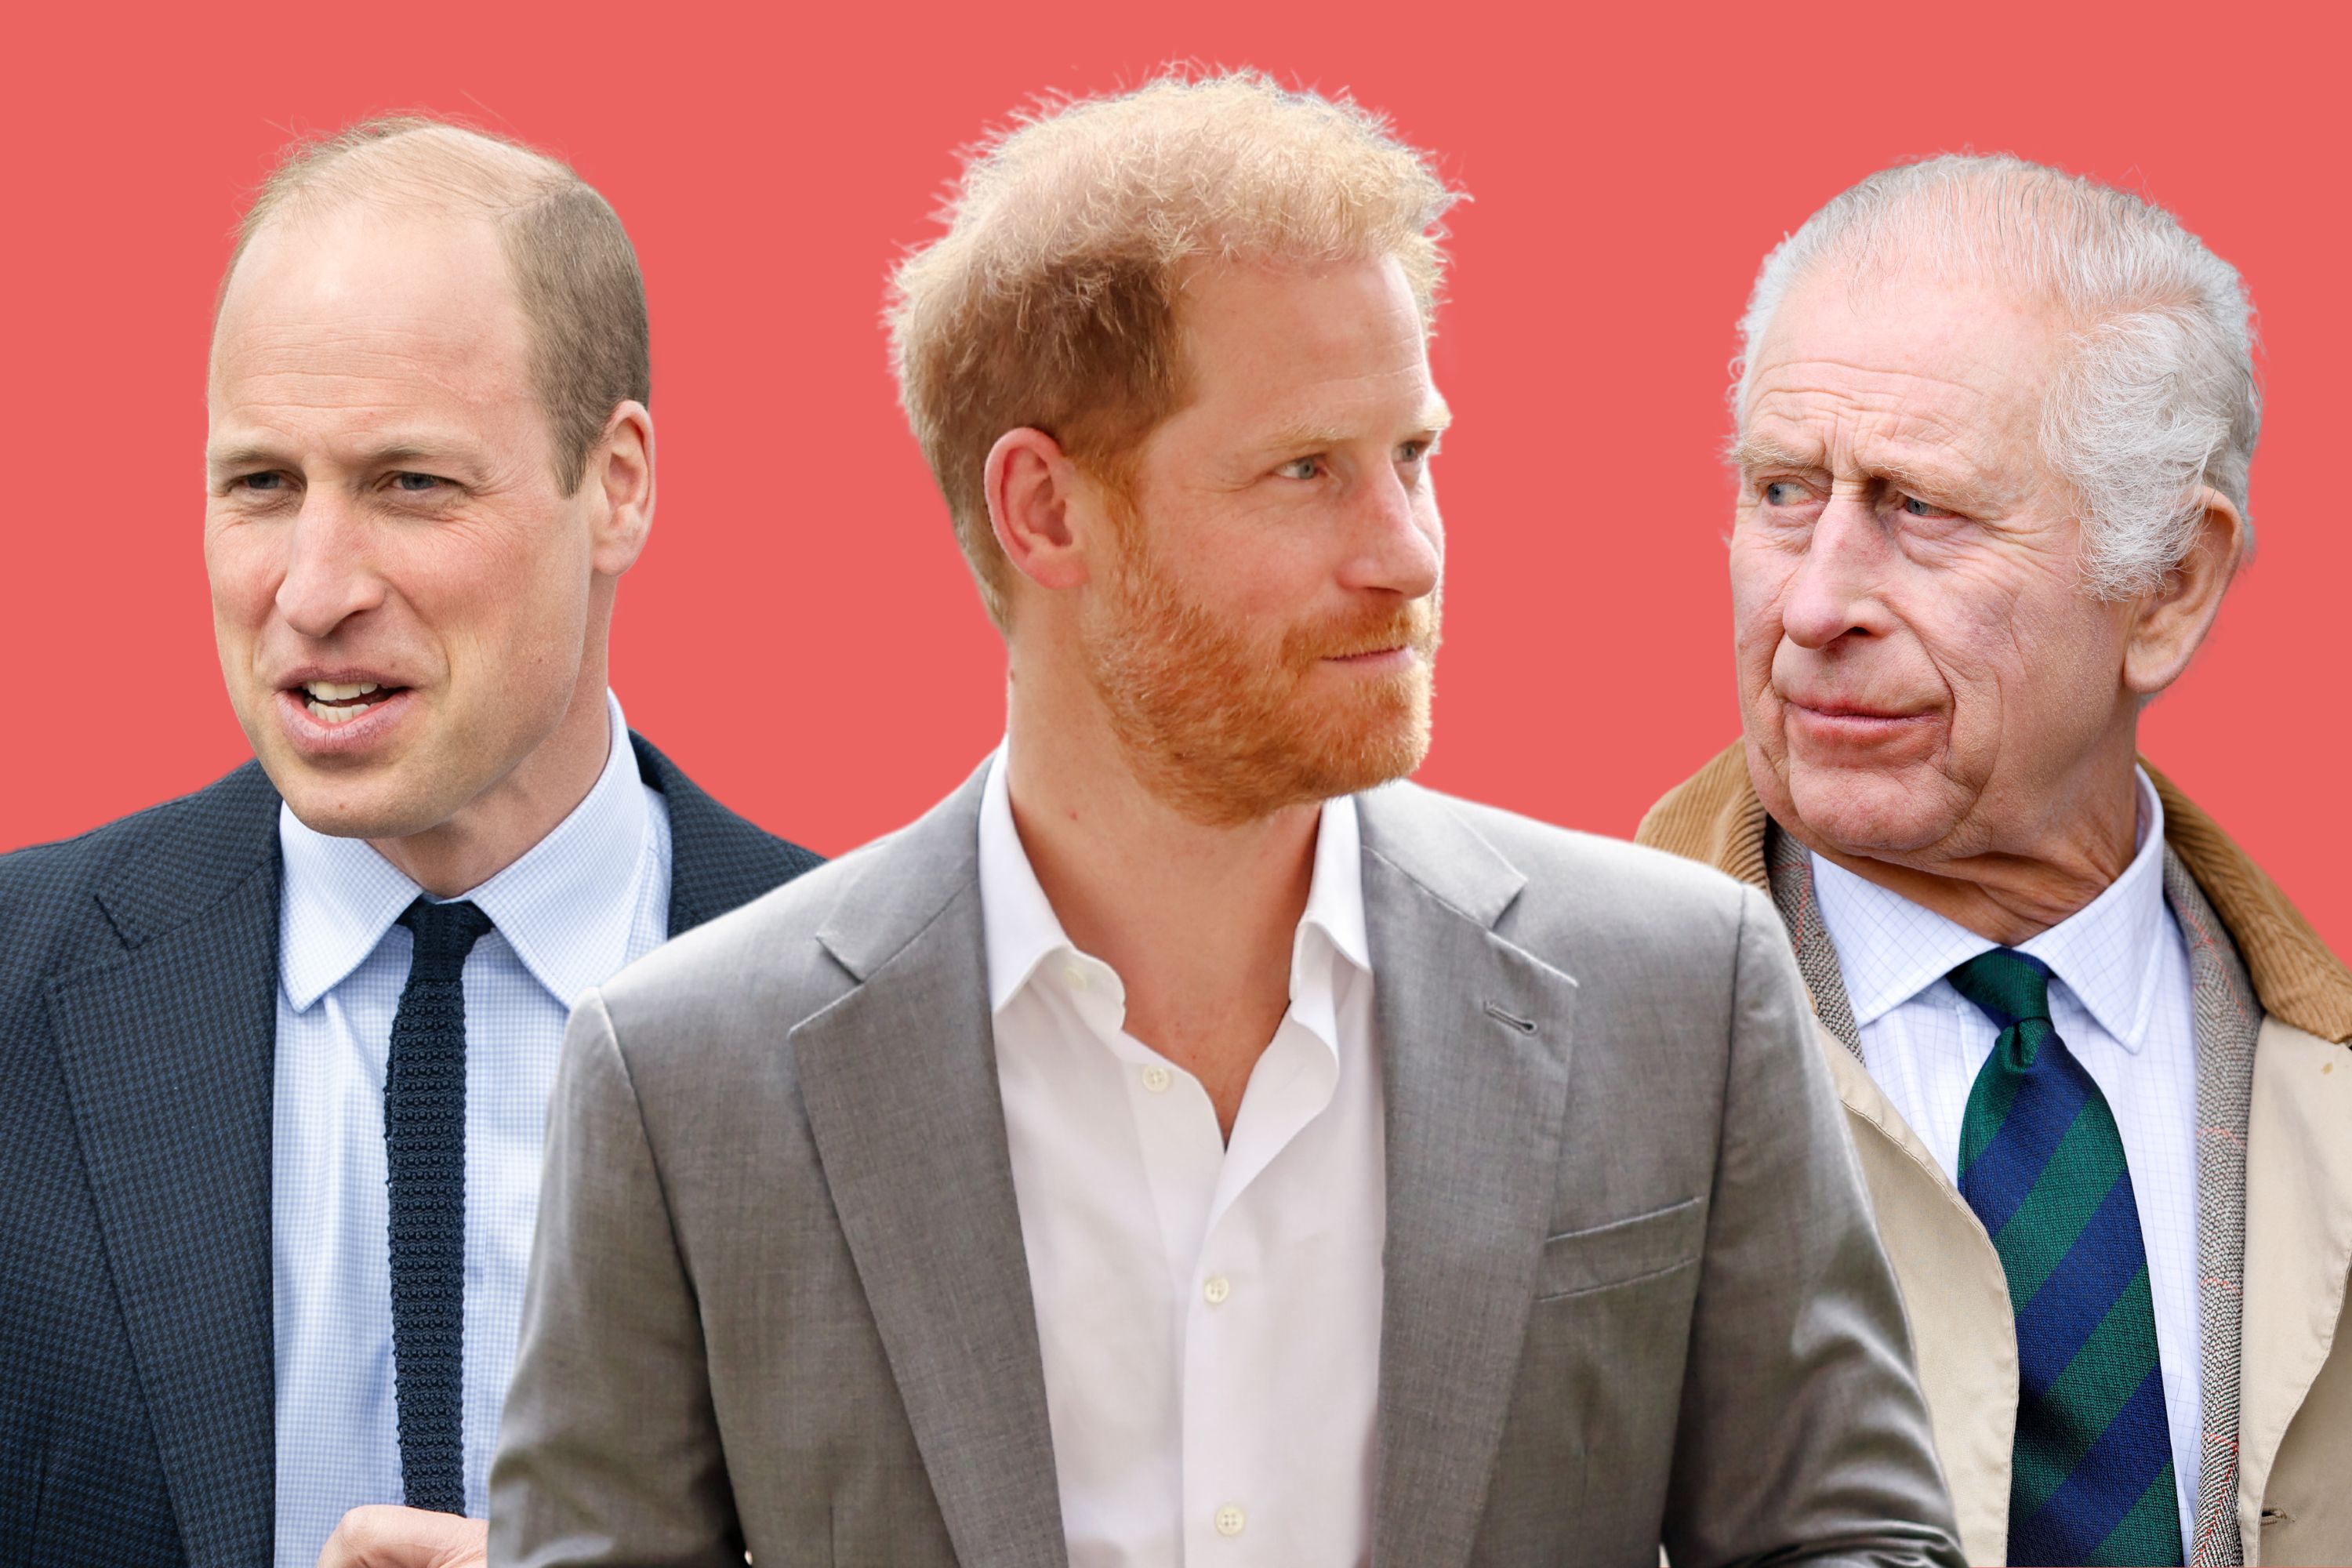 Kral Charles’ın Prens Harry’yi küçümsemesi maliyetli bir hata olabilir